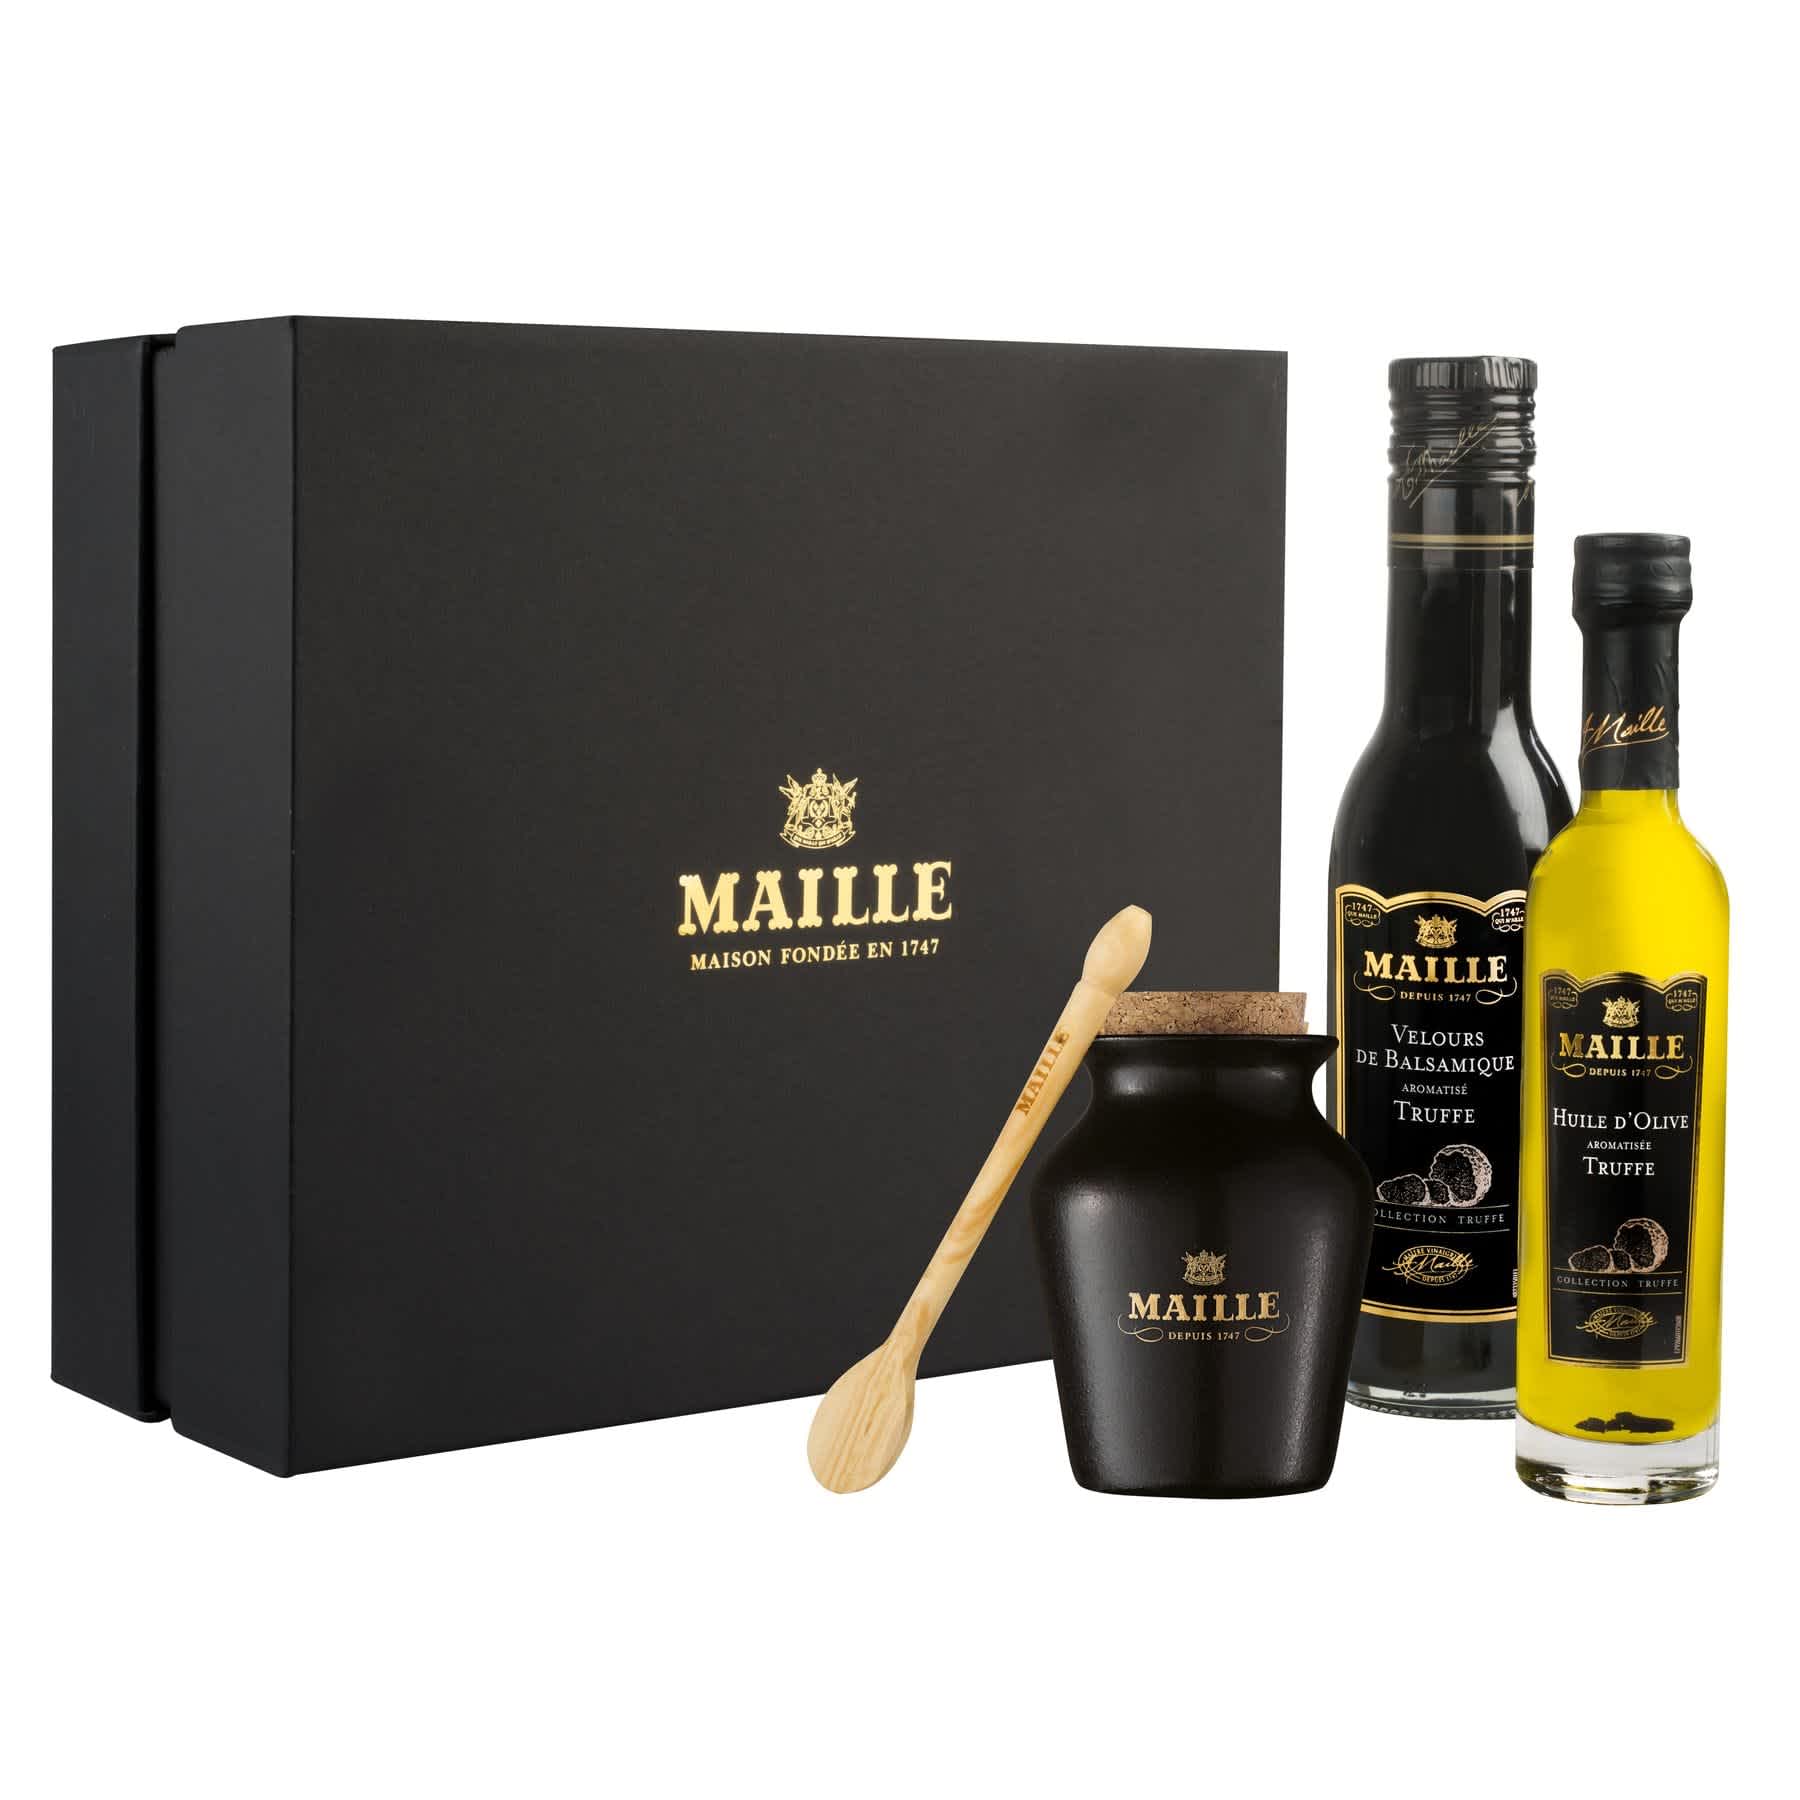 Maille - Collection de saveurs à la truffe